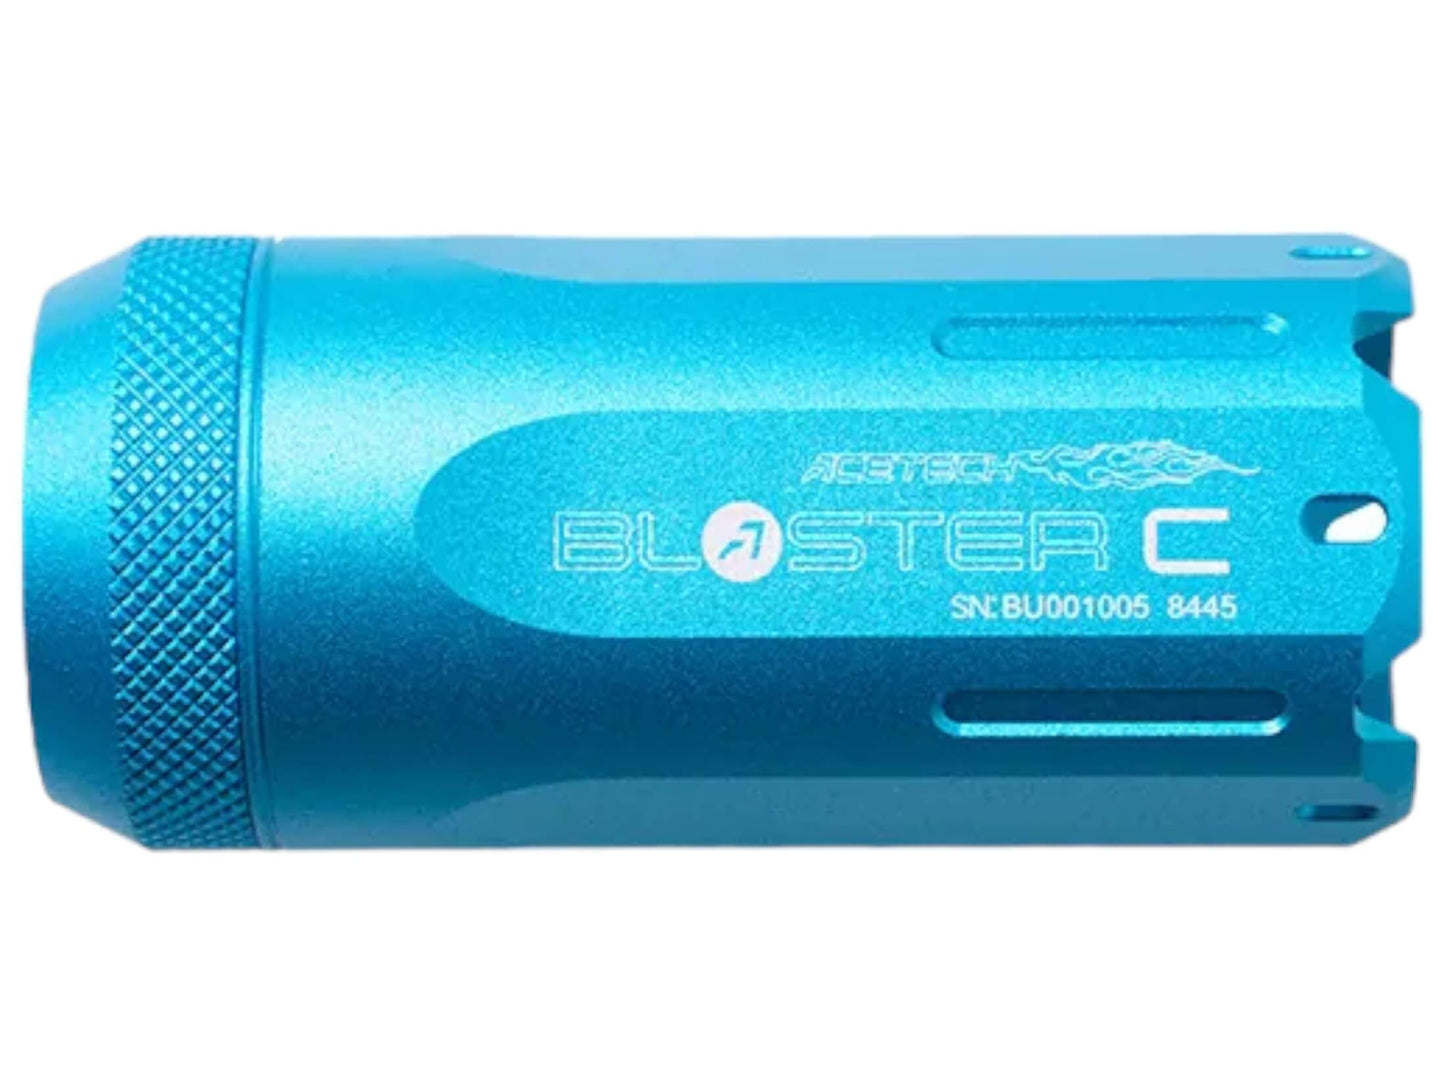 Acetech Blaster C Tracer Unit